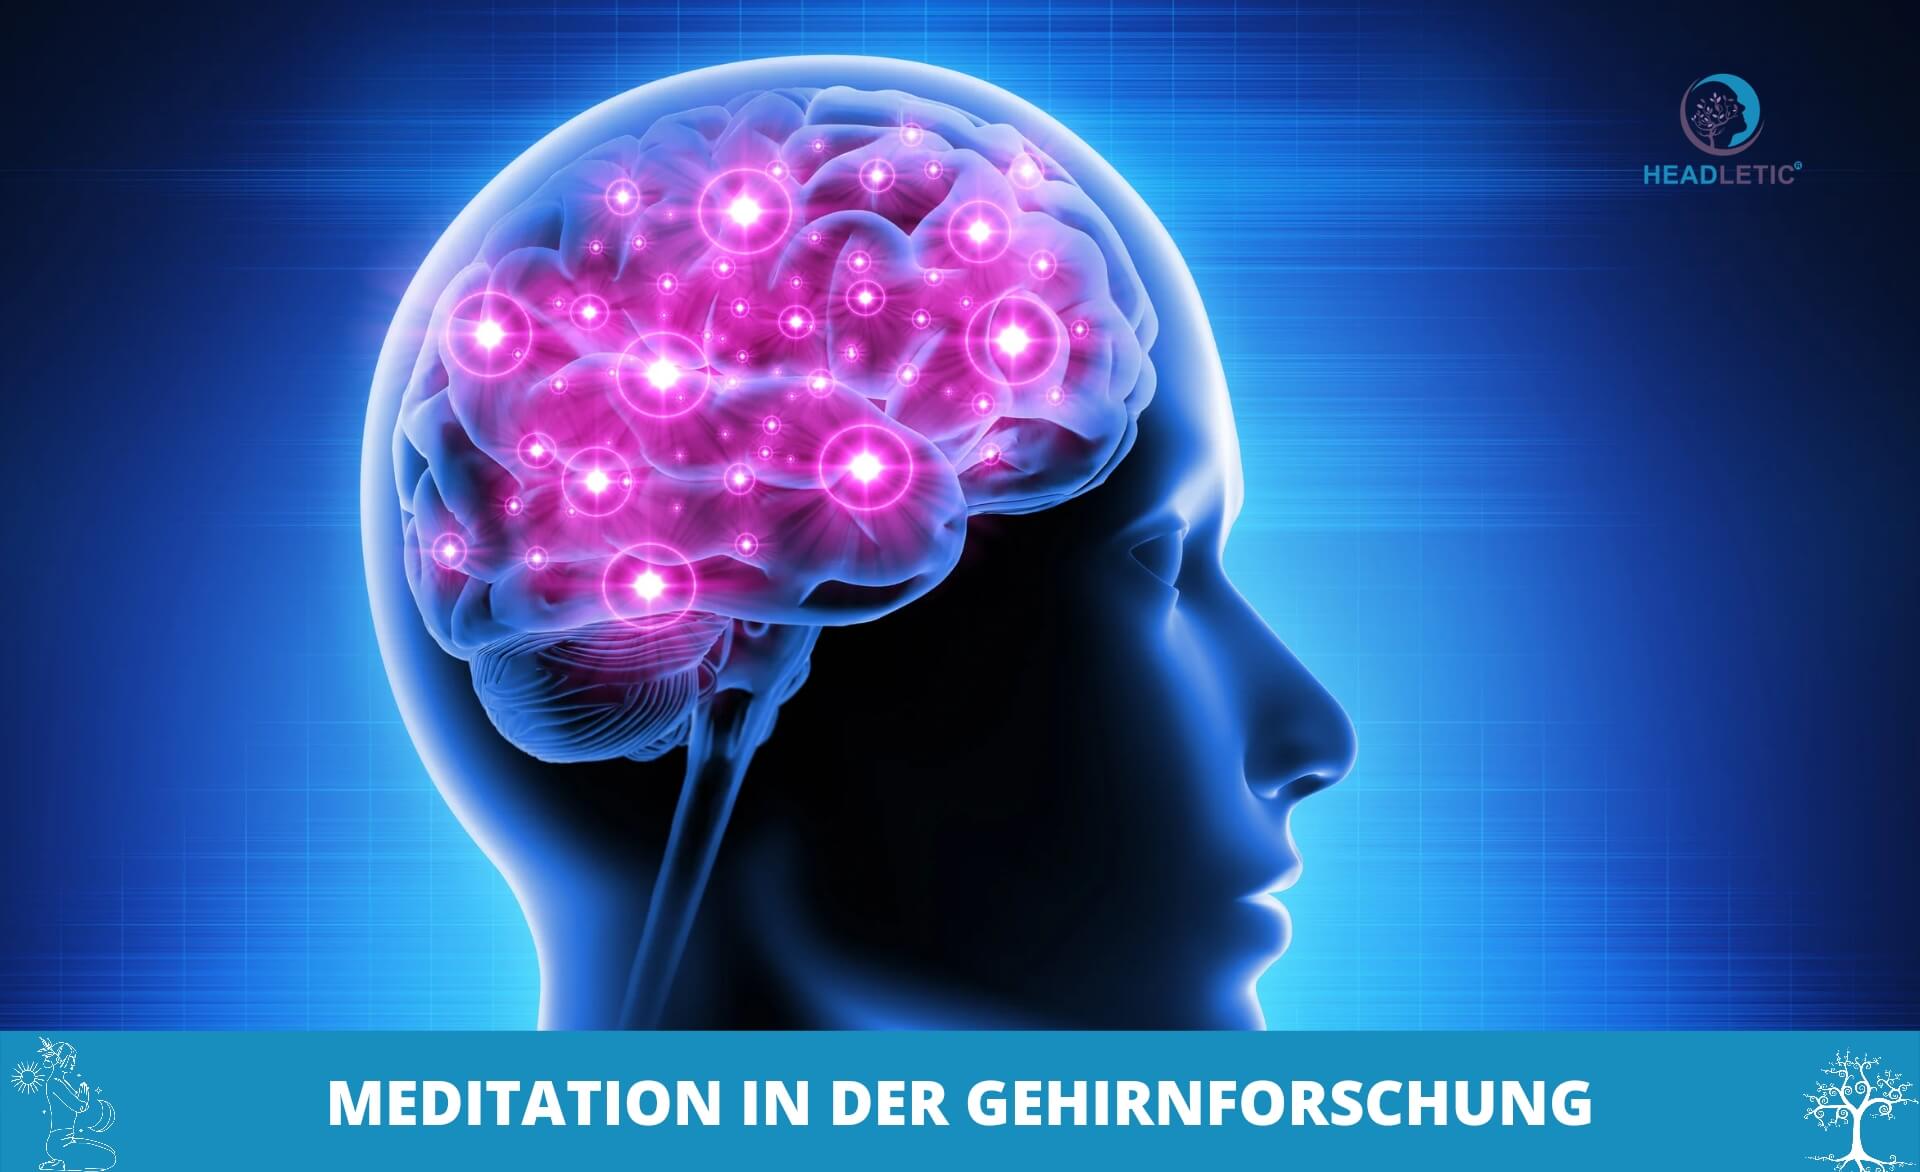 Gehirnforschung - wie Meditation unseren Geist verändern kann